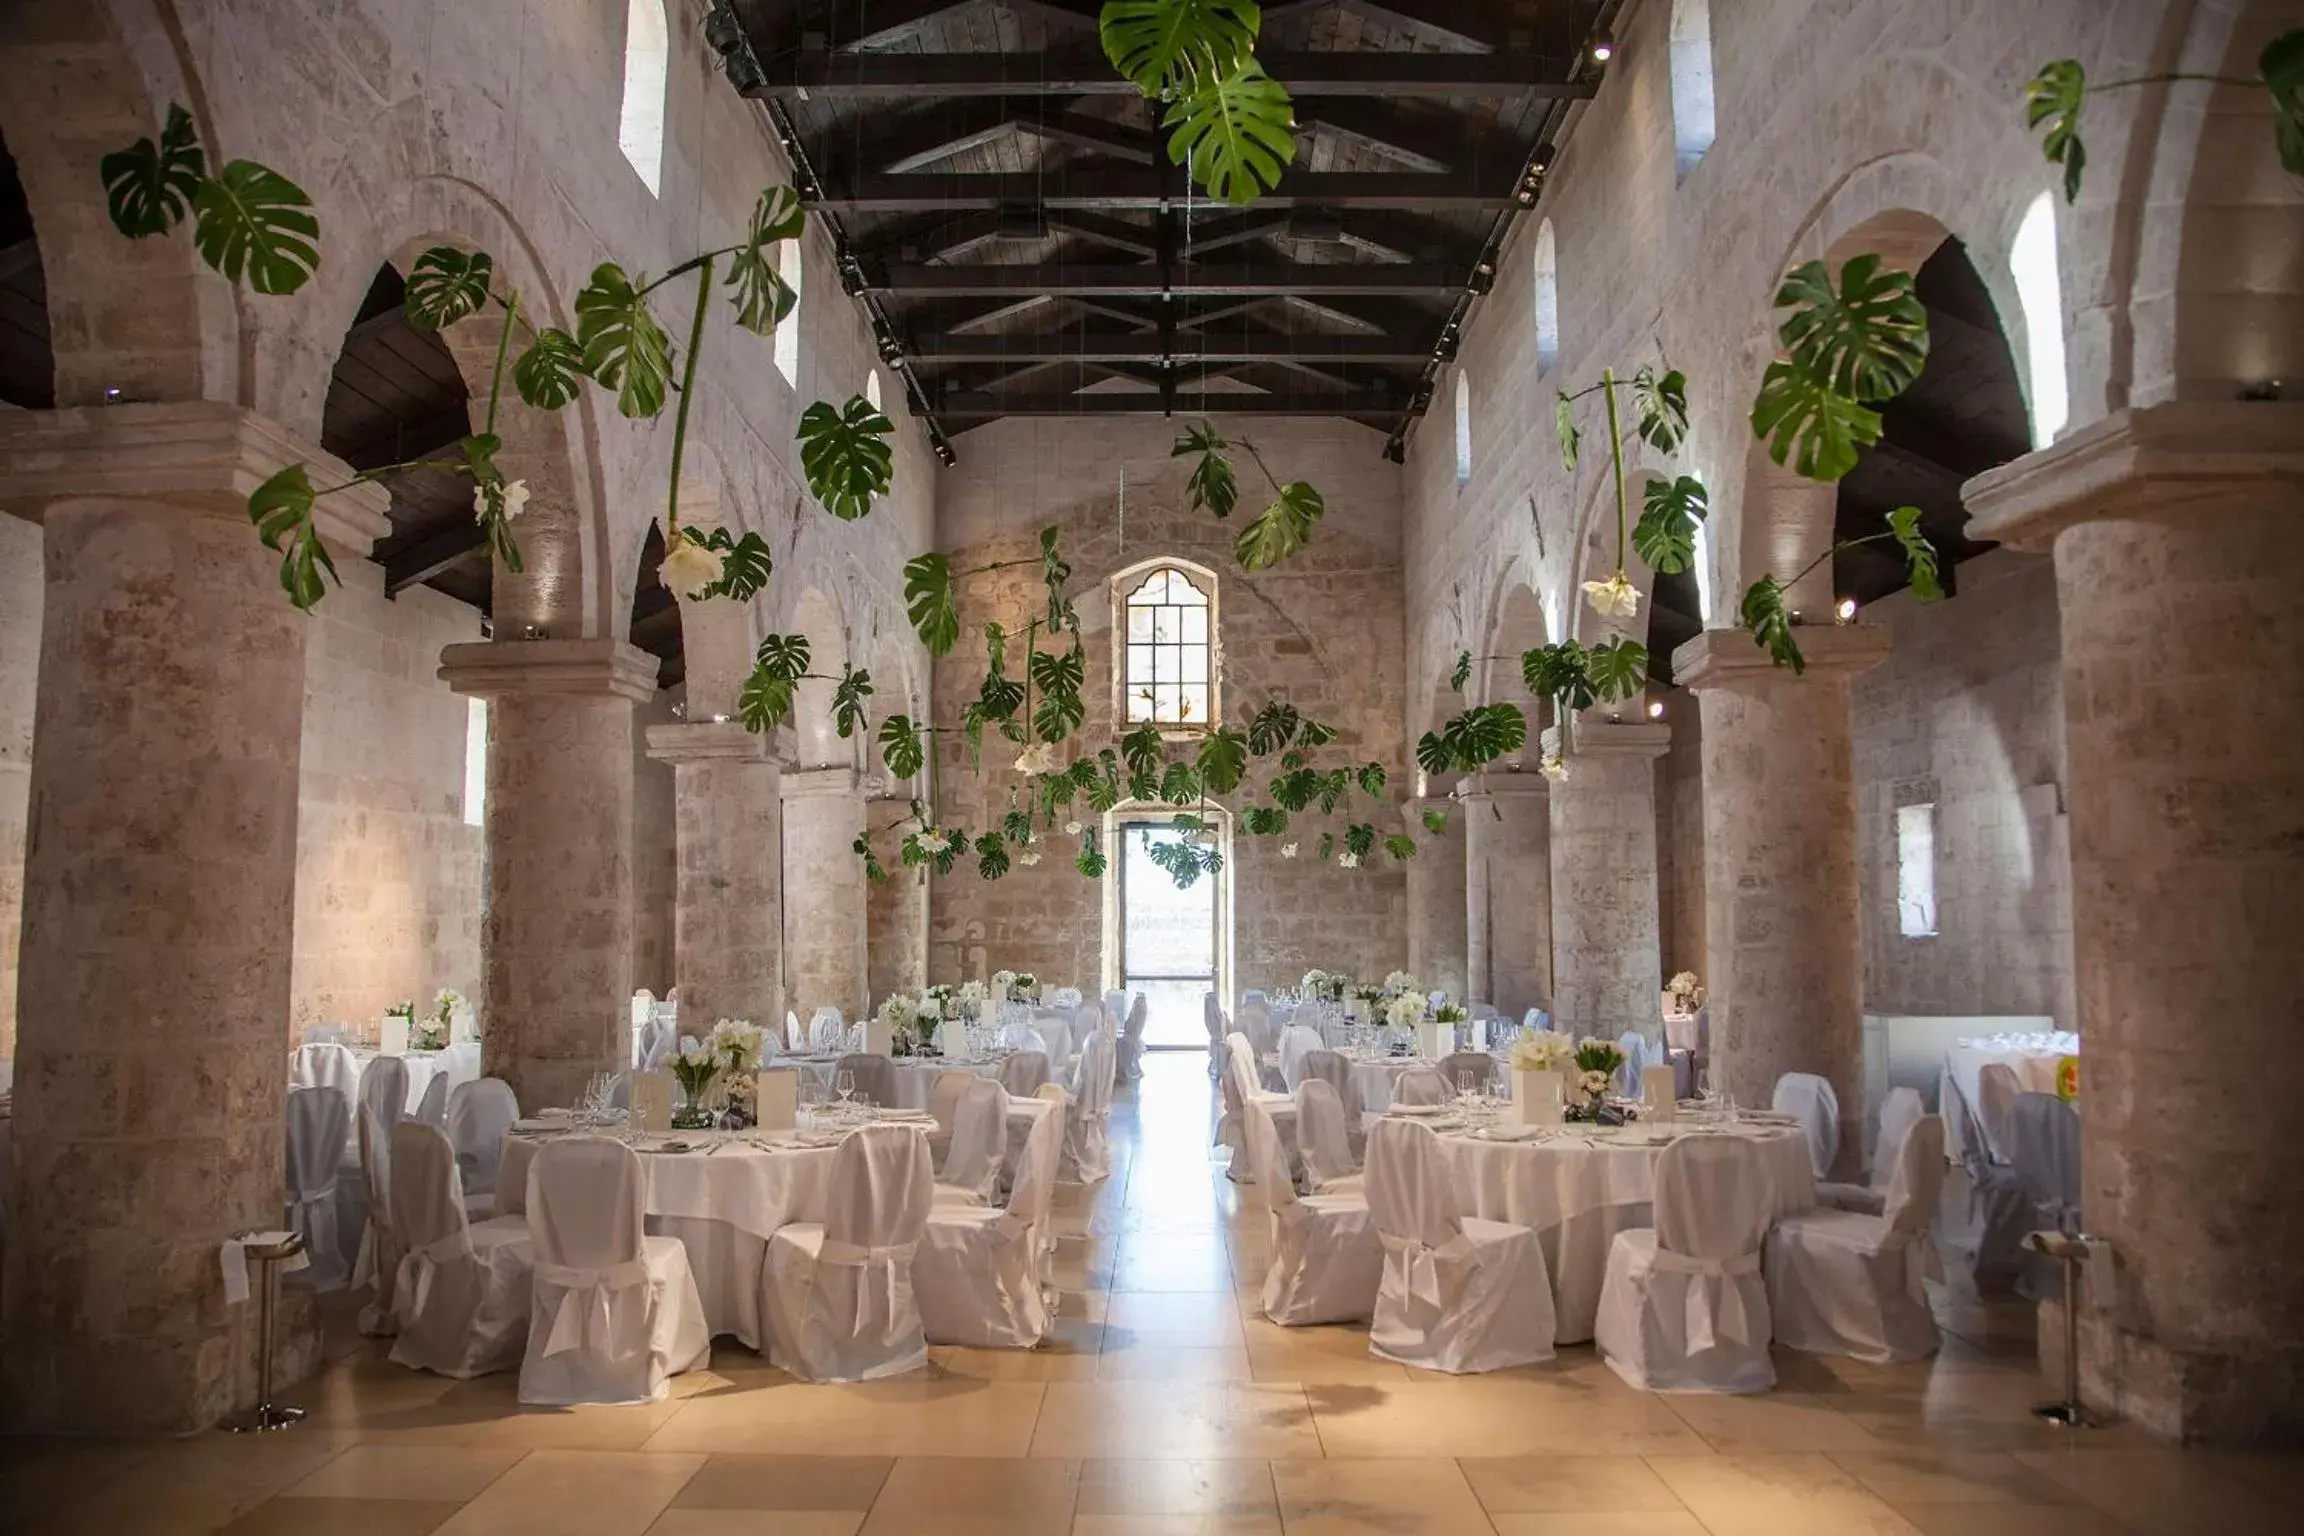 Banquet/Function facilities, Banquet Facilities in Histò San Pietro Sul Mar Piccolo